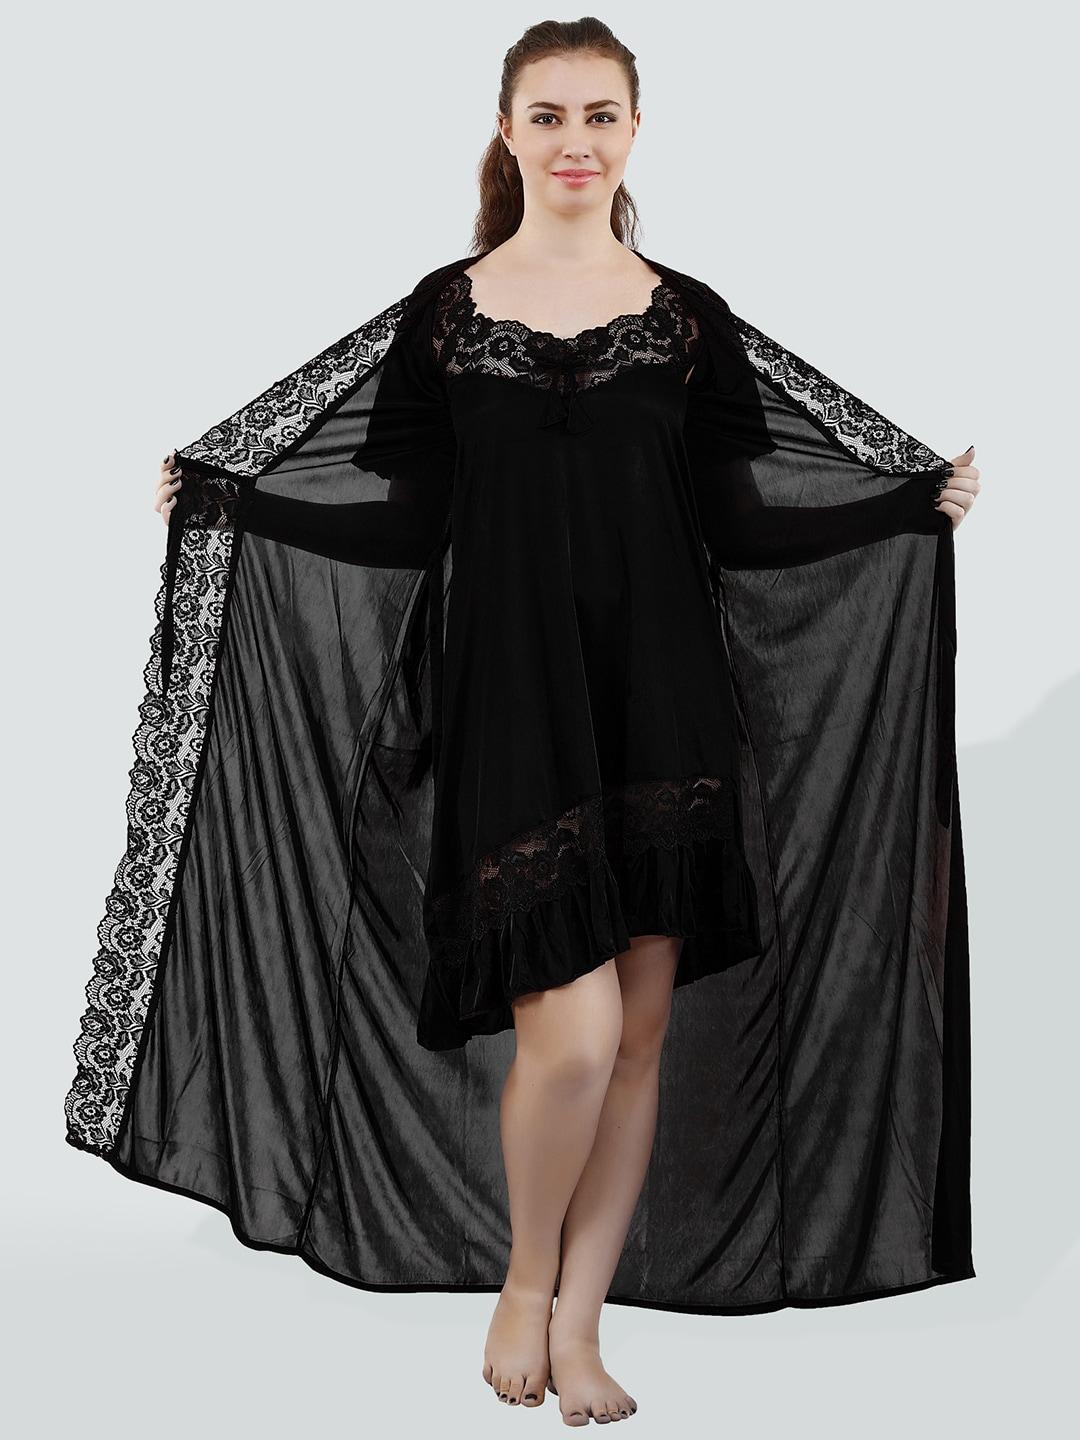 romaisa-women-satin-nightdress-with-robe